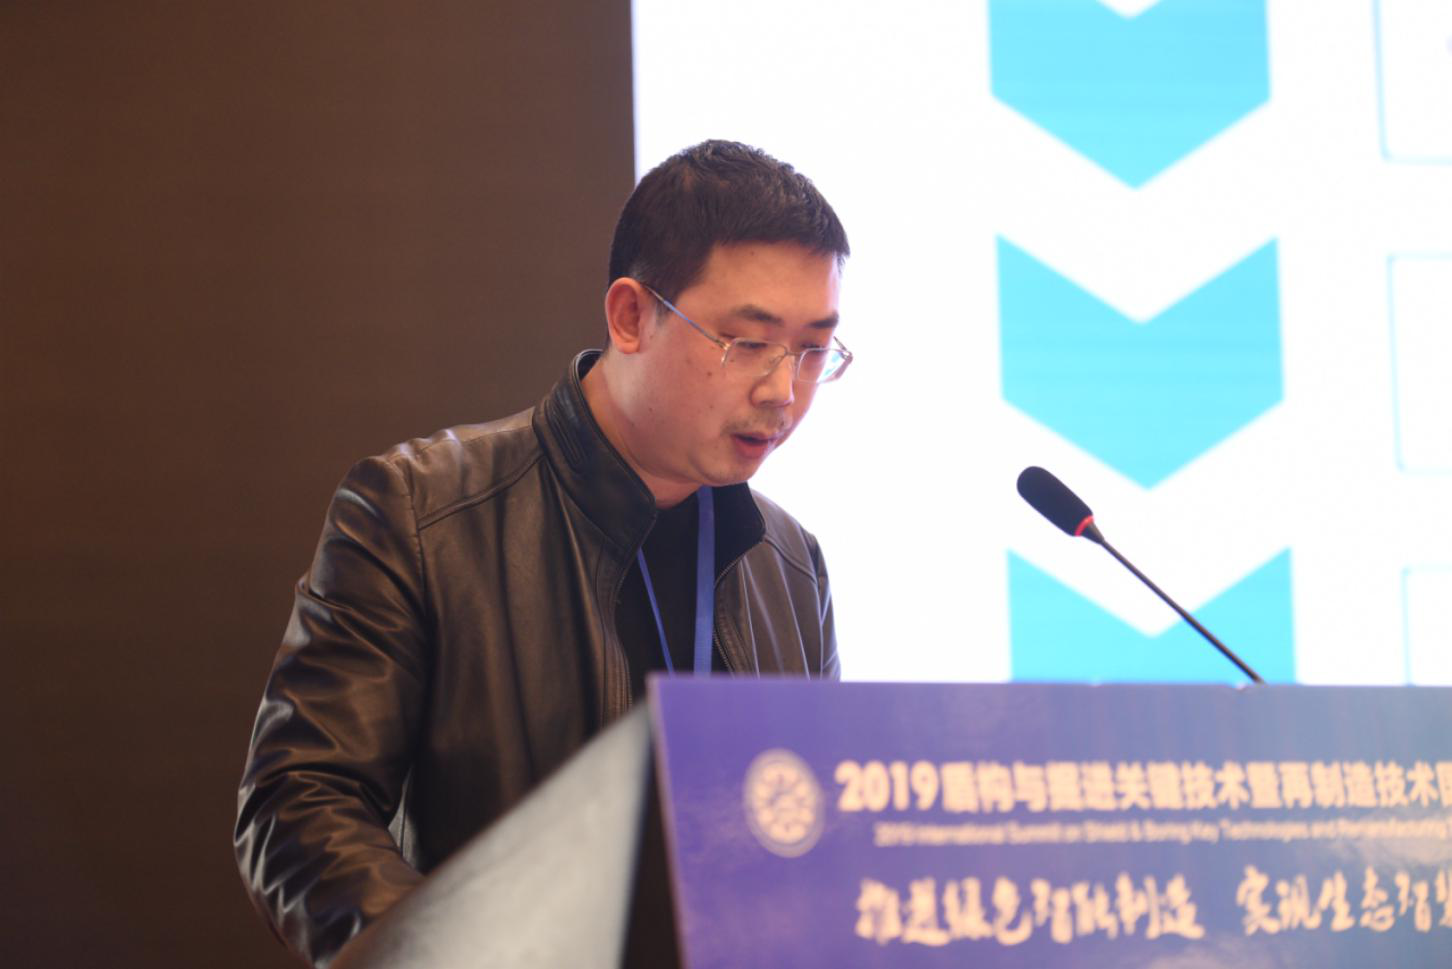 2019盾构与掘进关键技术暨盾构再制造技术国际峰会在郑州胜利闭幕